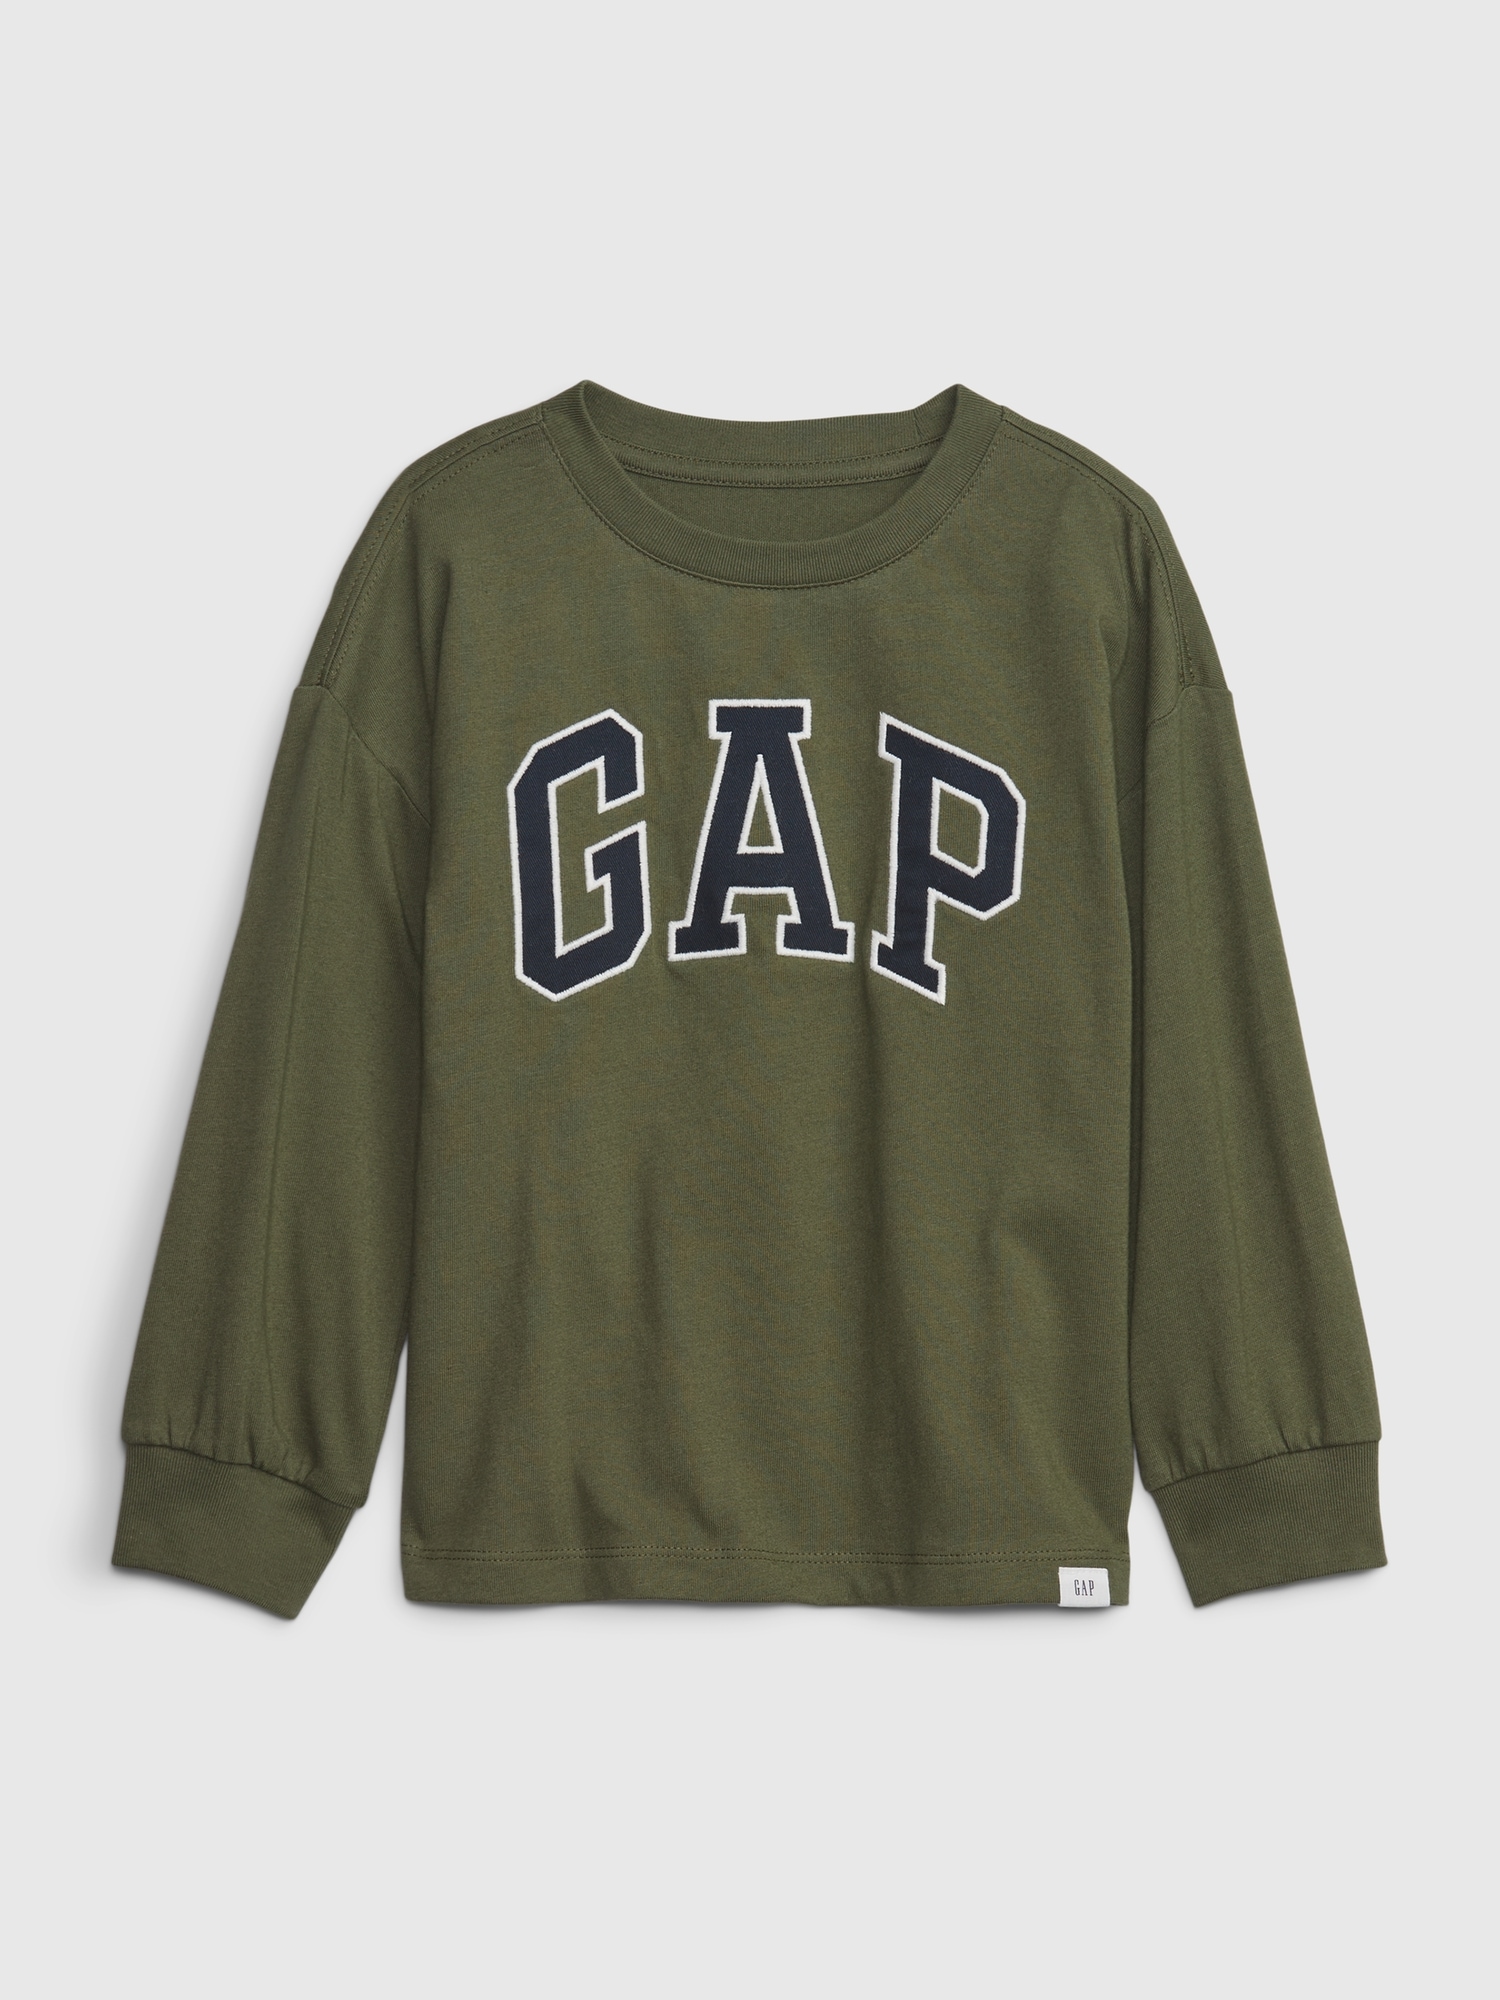 Gap Toddler Arch Logo T-Shirt